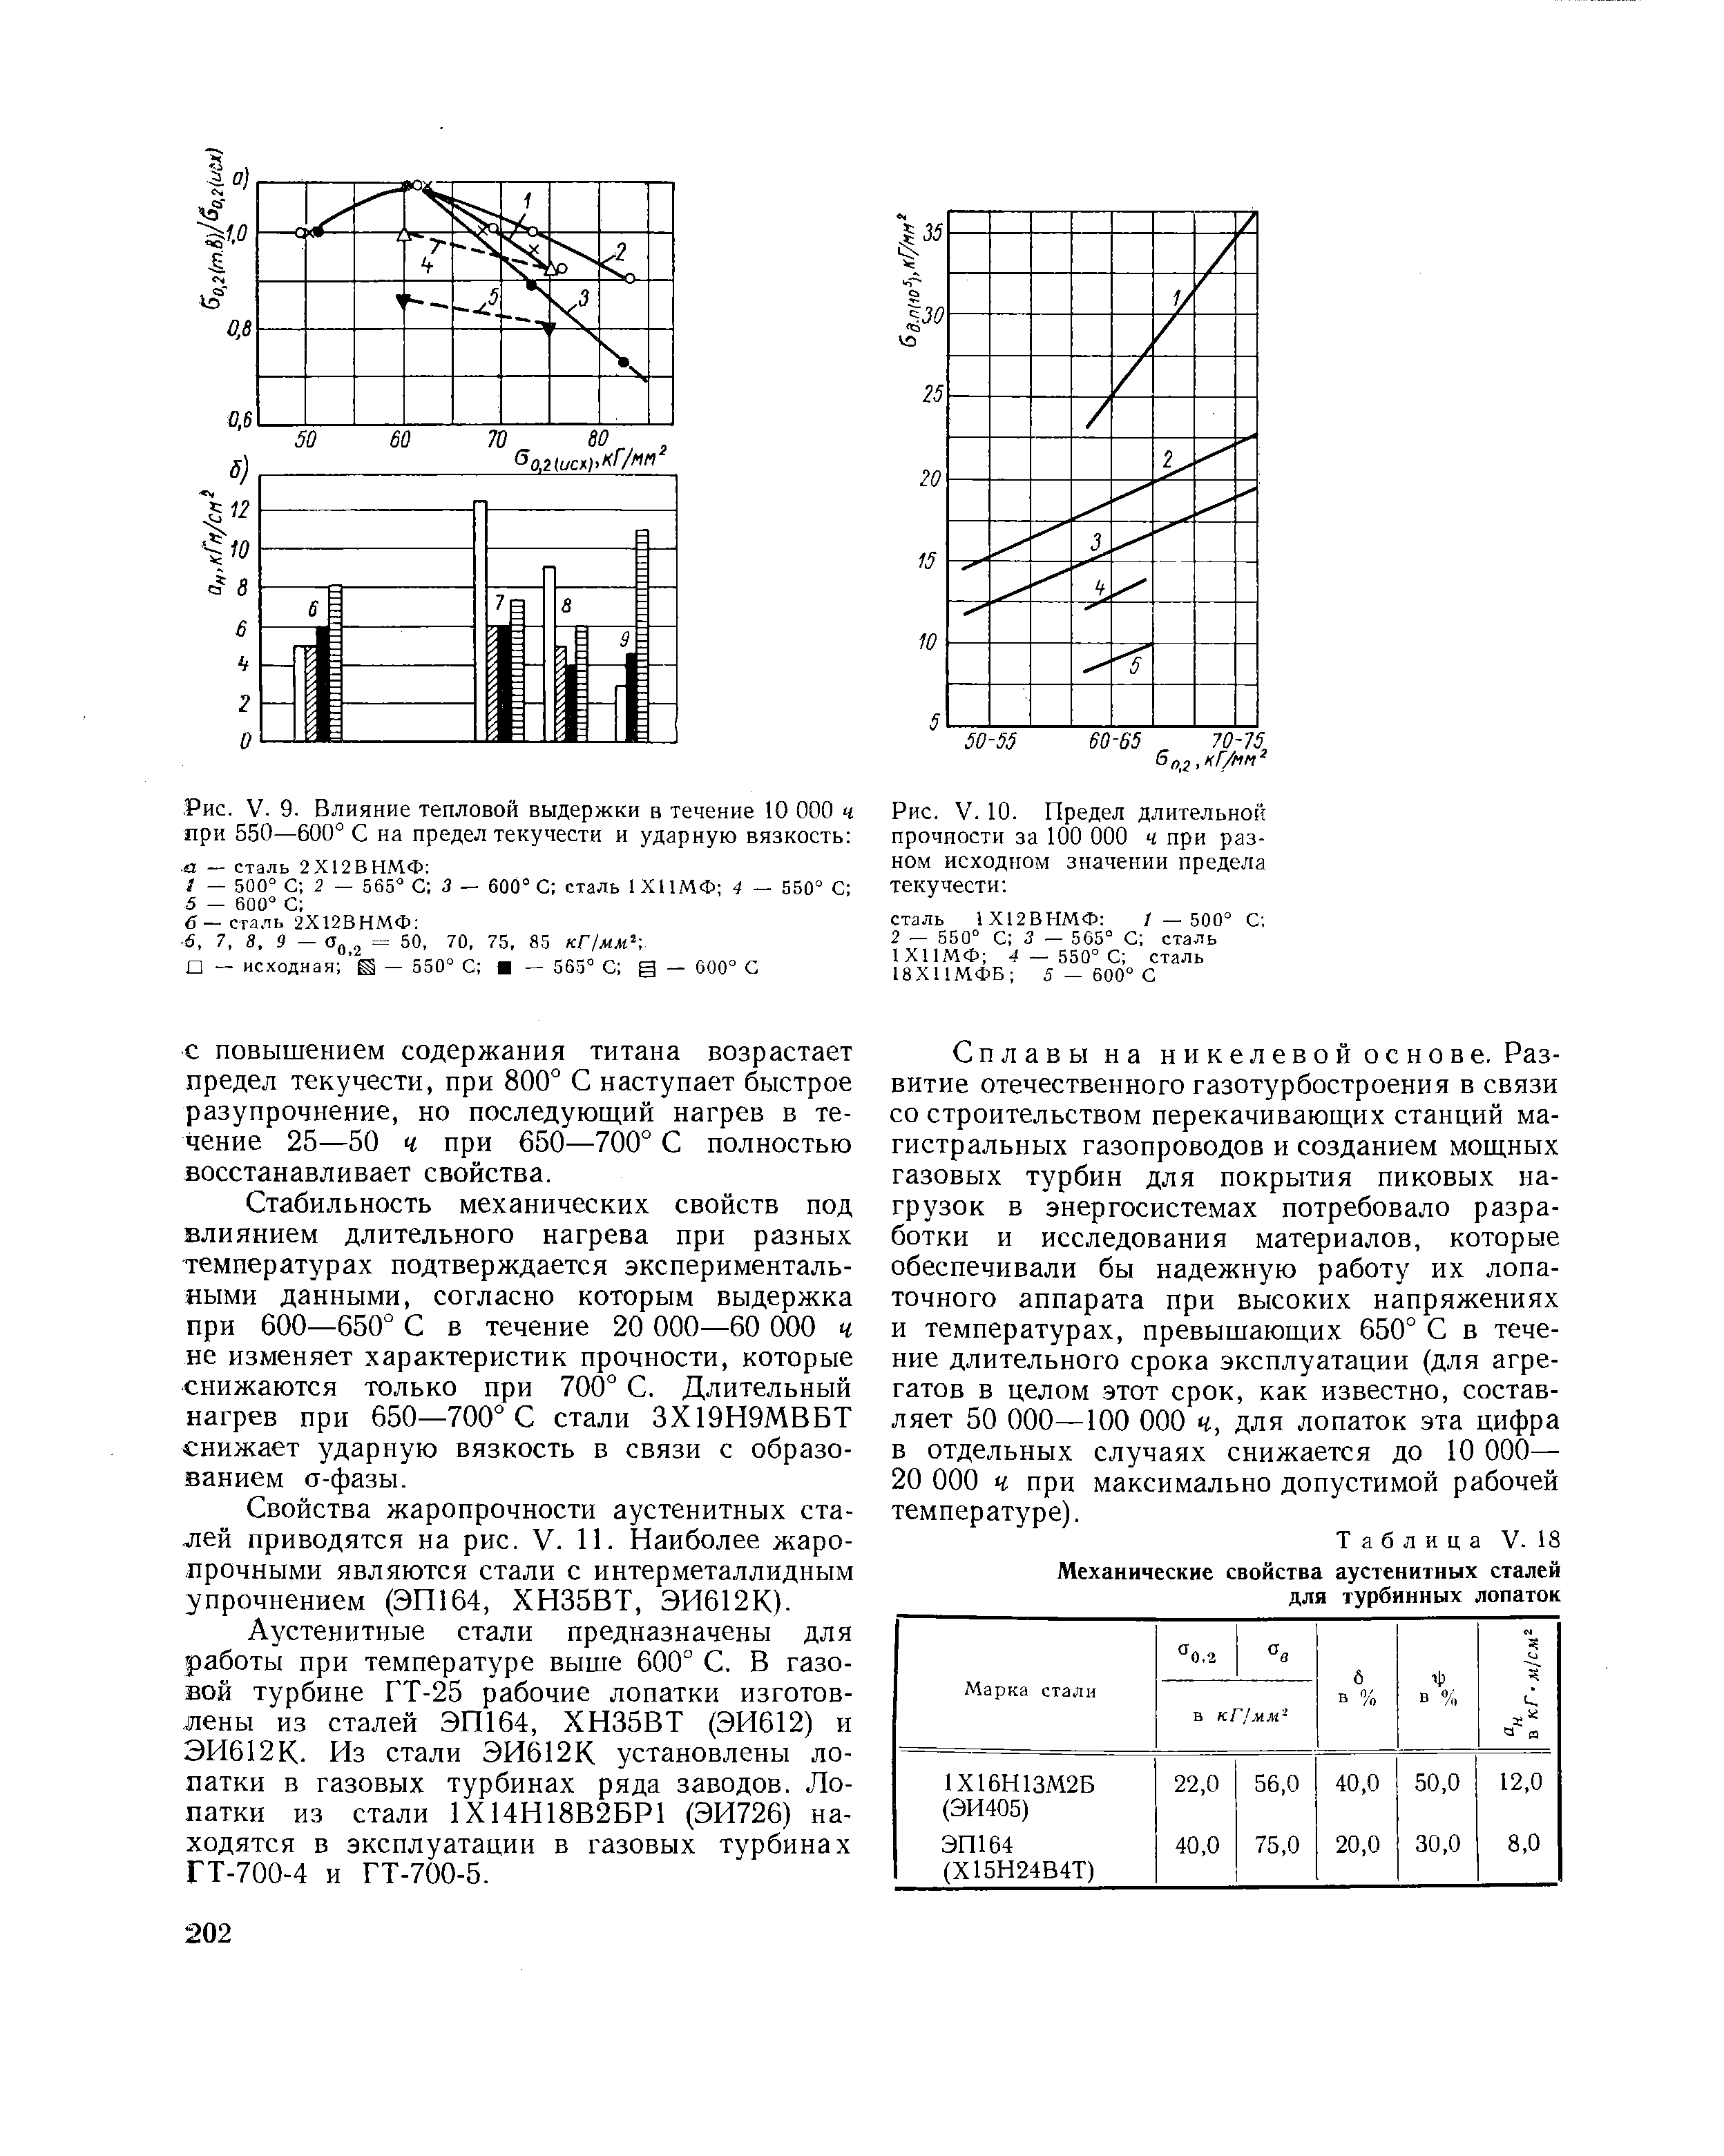 Таблица V. 18 Механические свойства аустенитных сталей для турбинных лопаток
